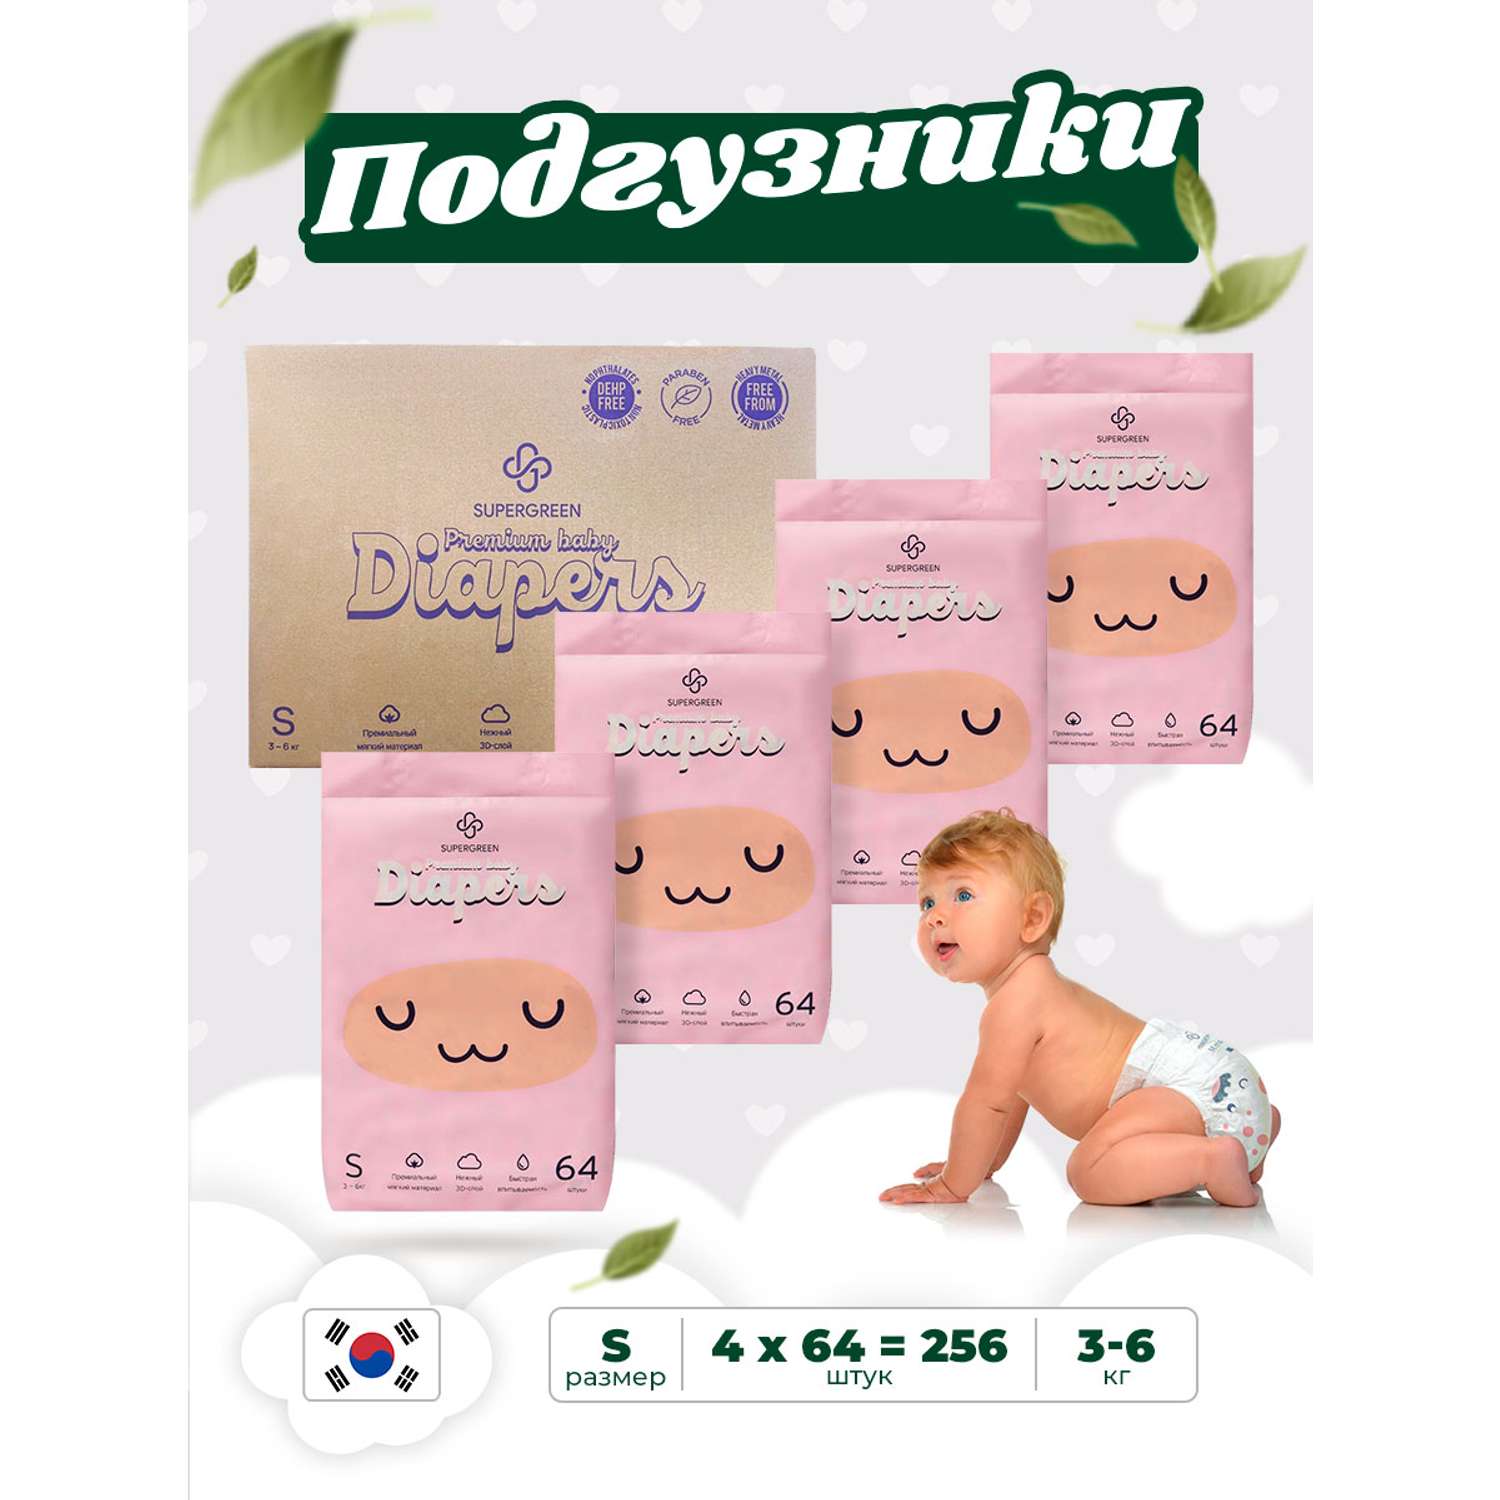 Подгузники SUPERGREEN Premium baby Diapers S размер 4 упаковки по 64 шт 3-6 кг ультрамягкие - фото 1